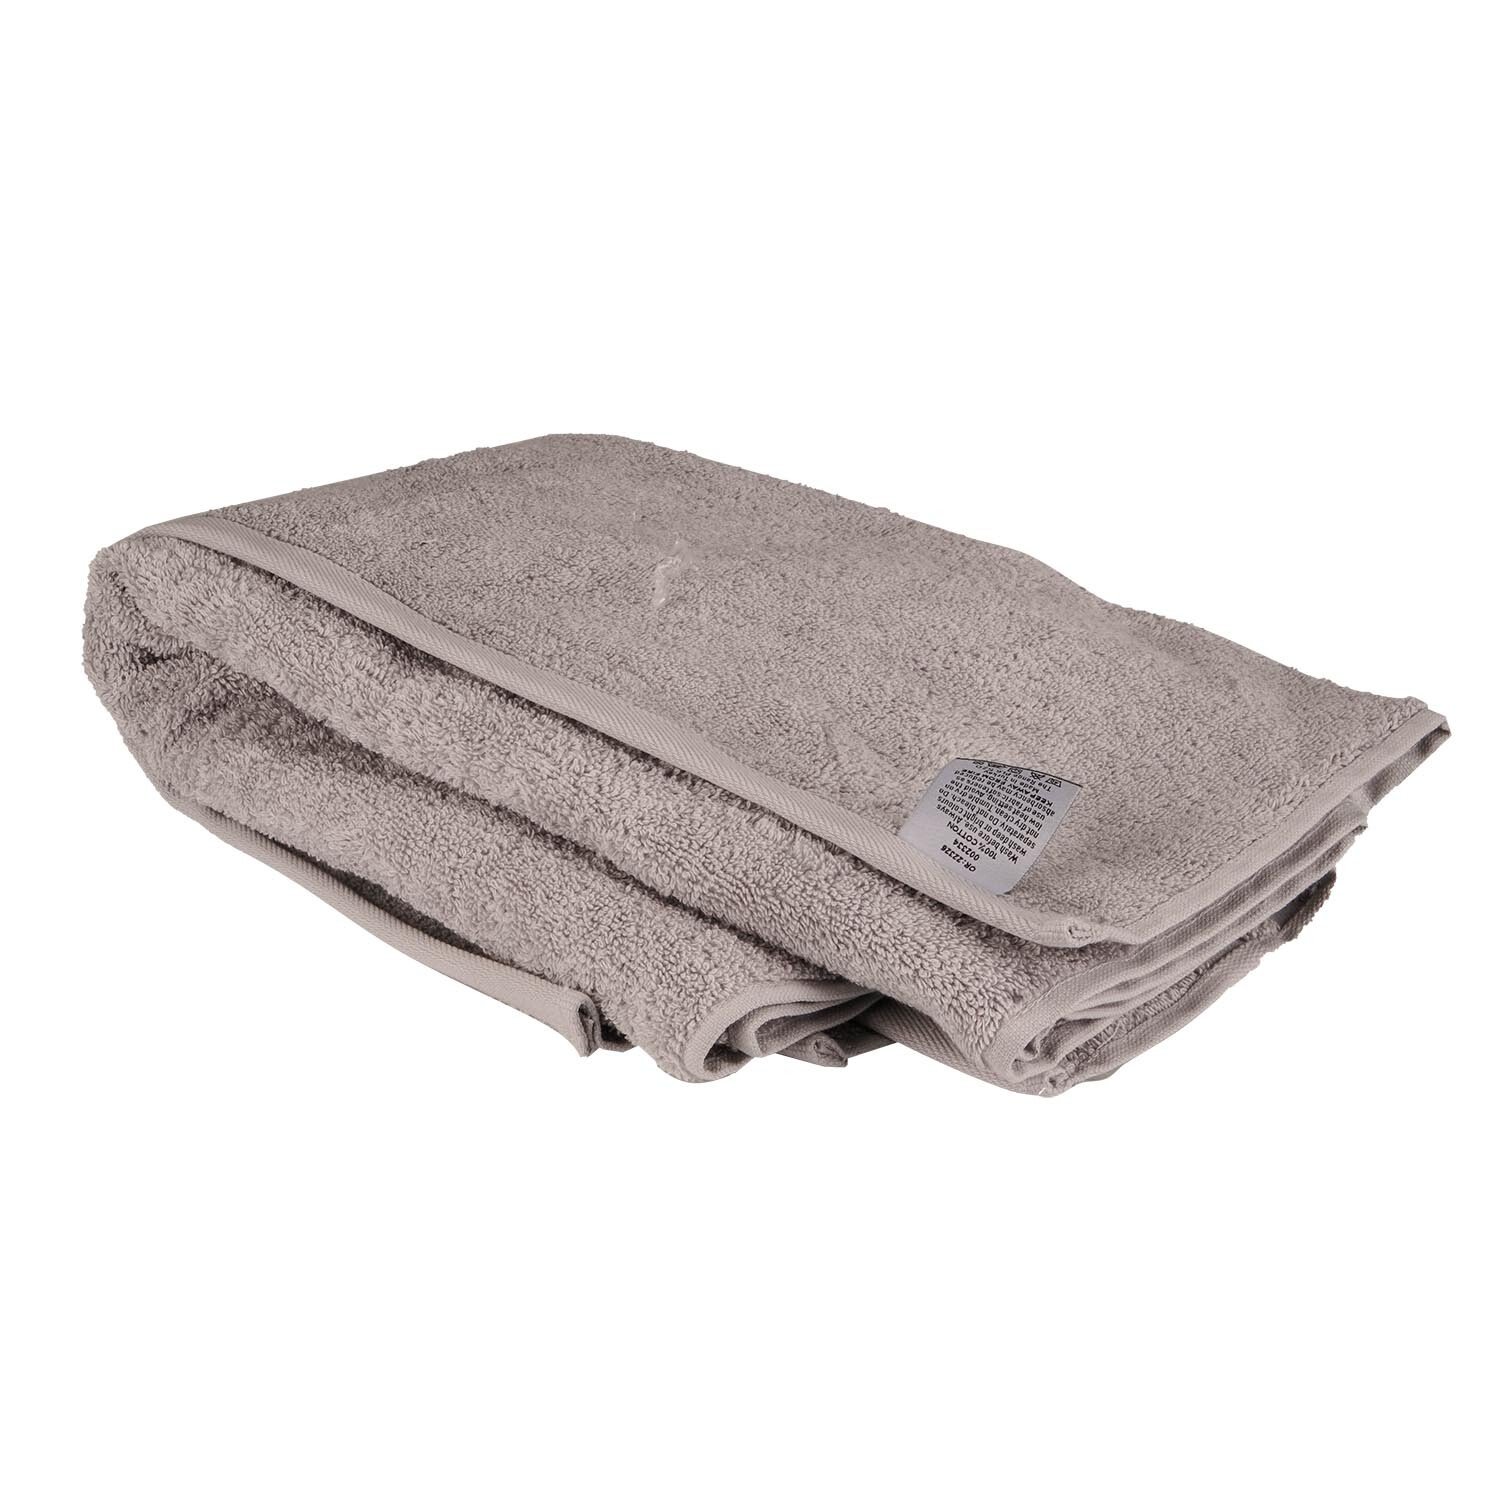 Divante Hand Towel  - Grey Image 2